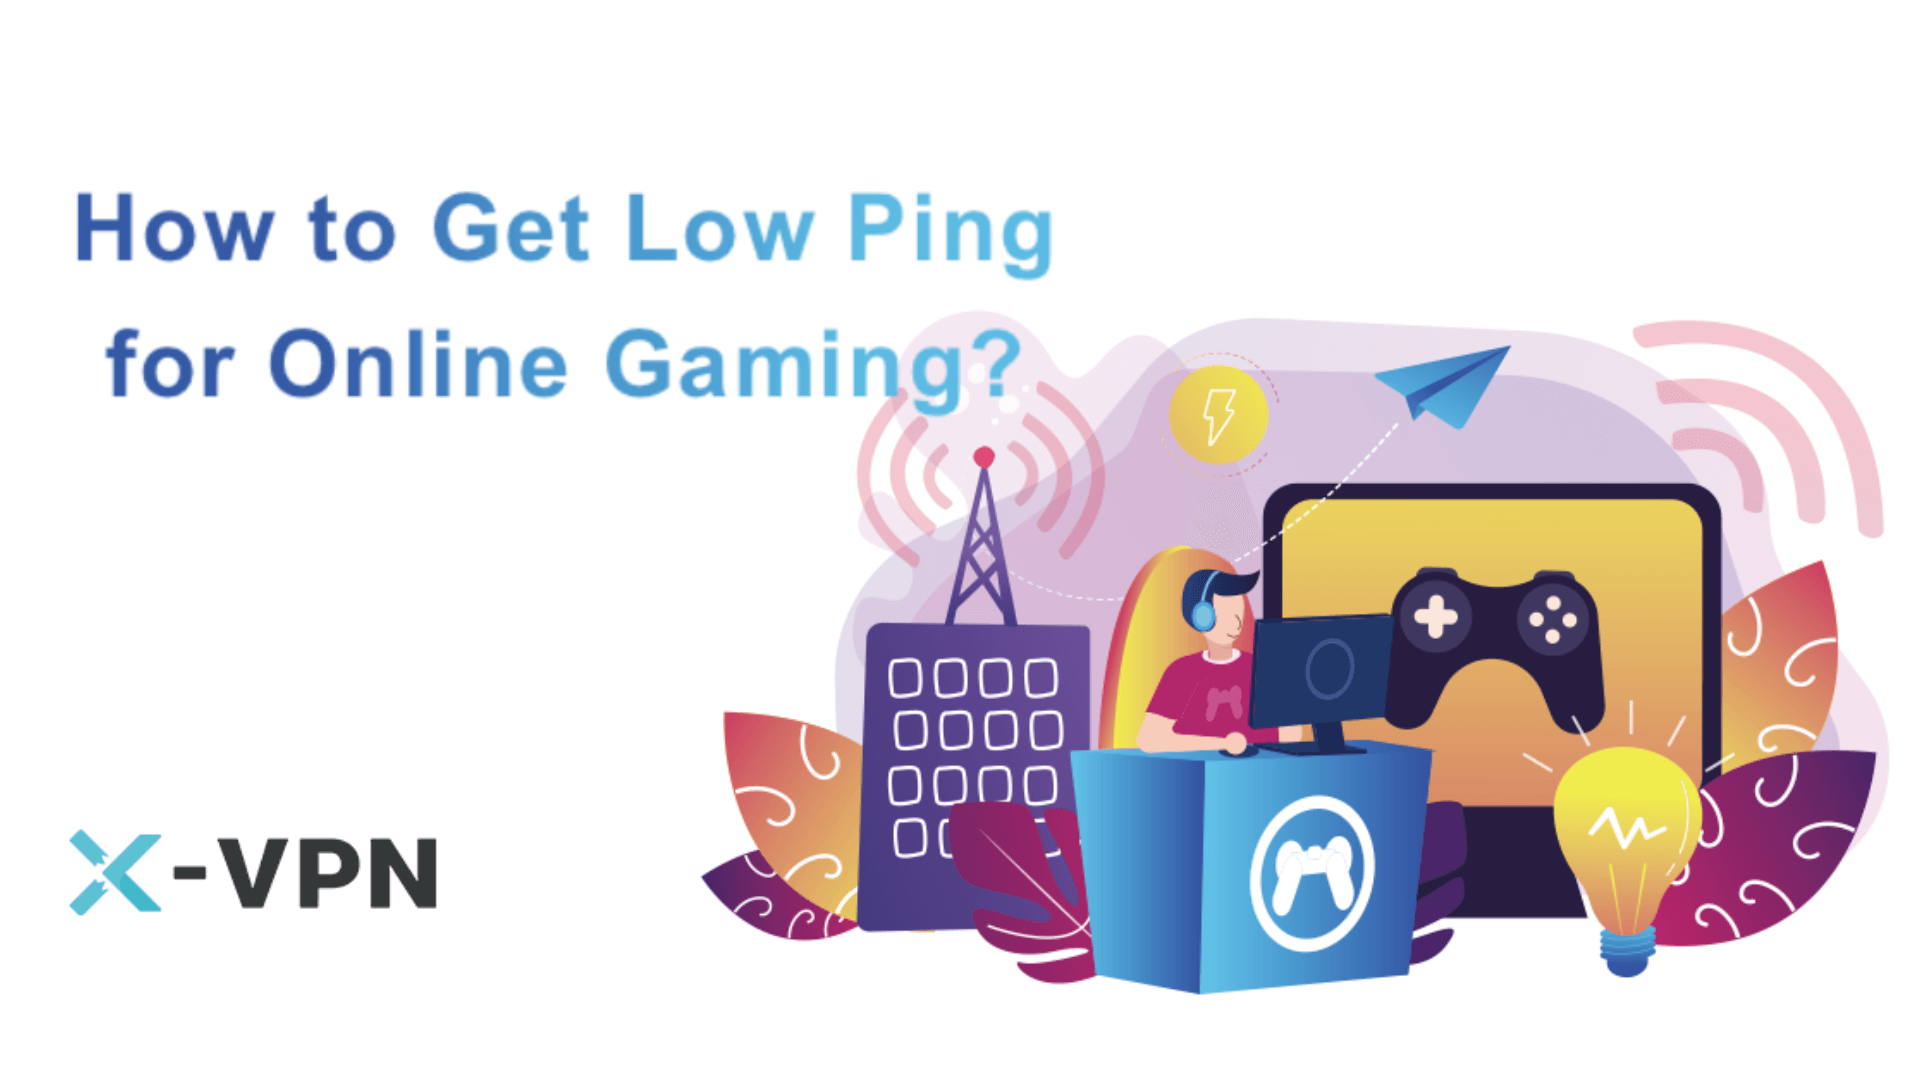 Wie kann man den Ping beim Online-Gaming reduzieren?